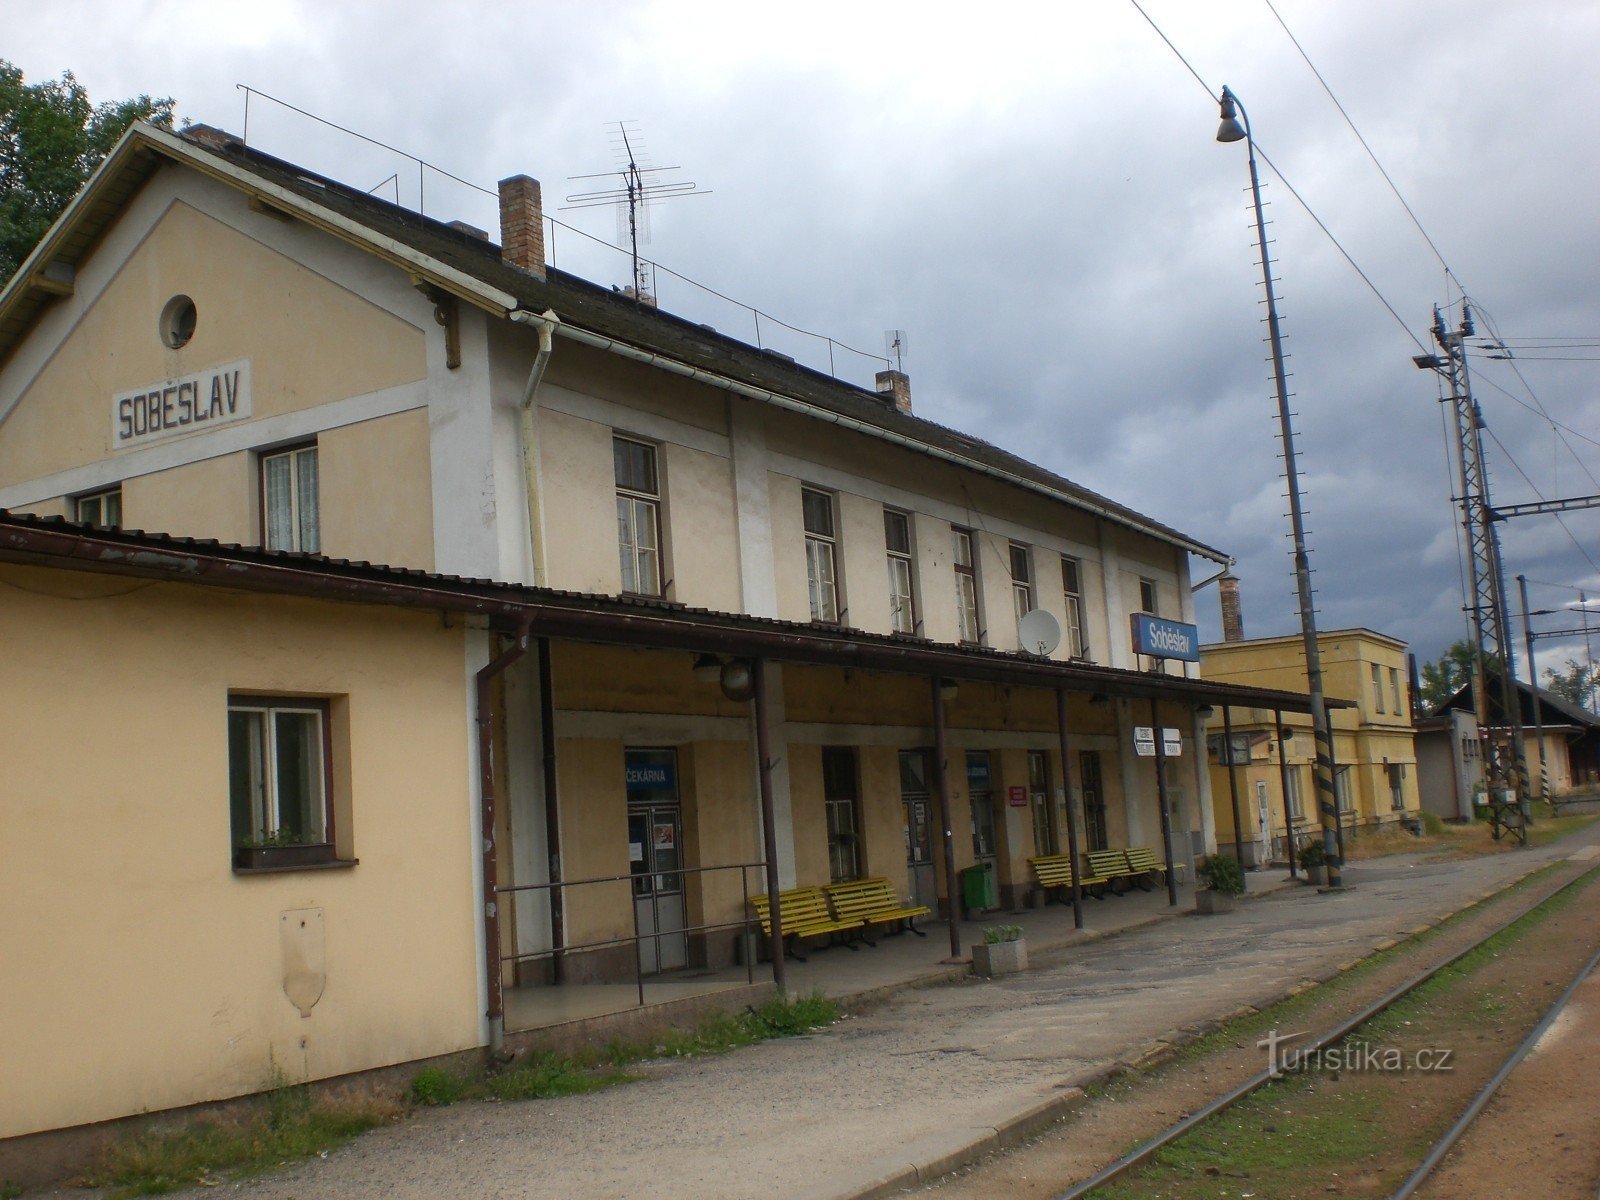 Soběslav - ga đường sắt